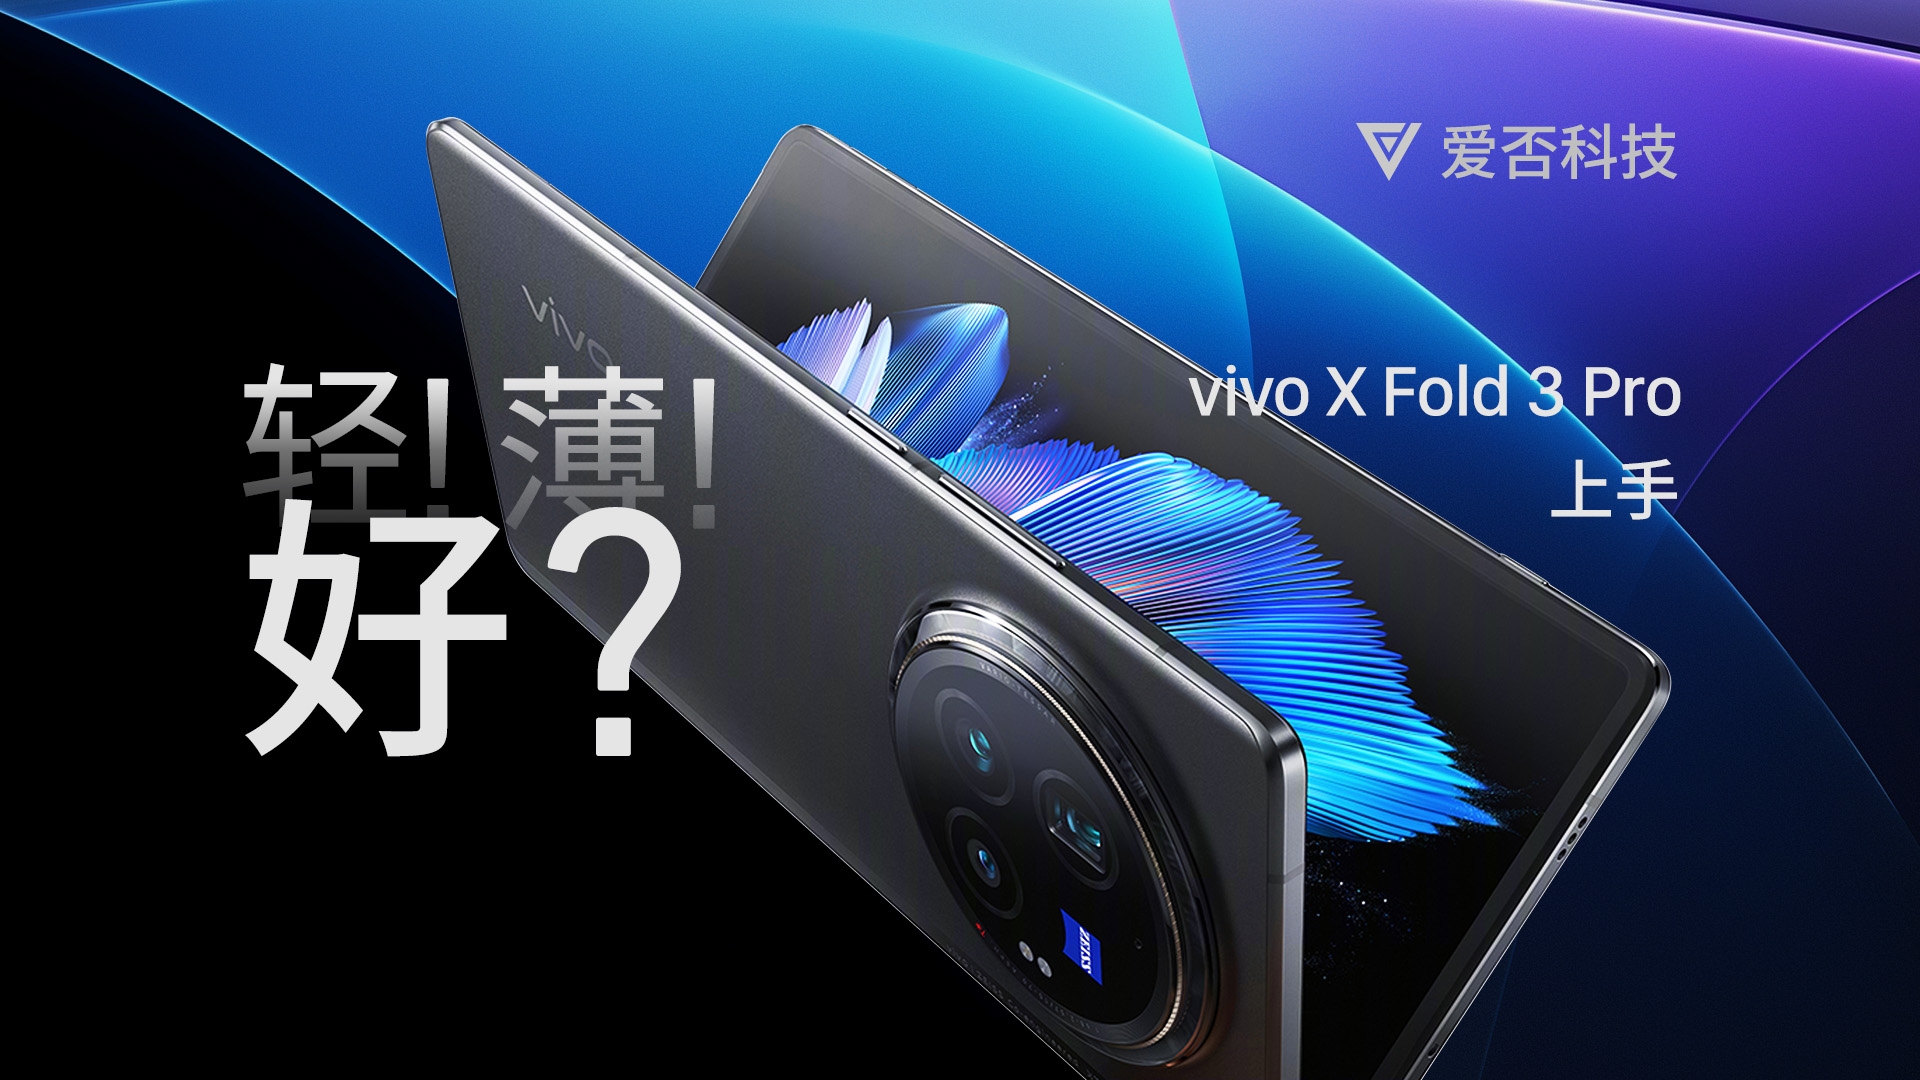 【爱否】我一定要跟大家说说 vivo x Fold 3 Pro 的几个优缺点